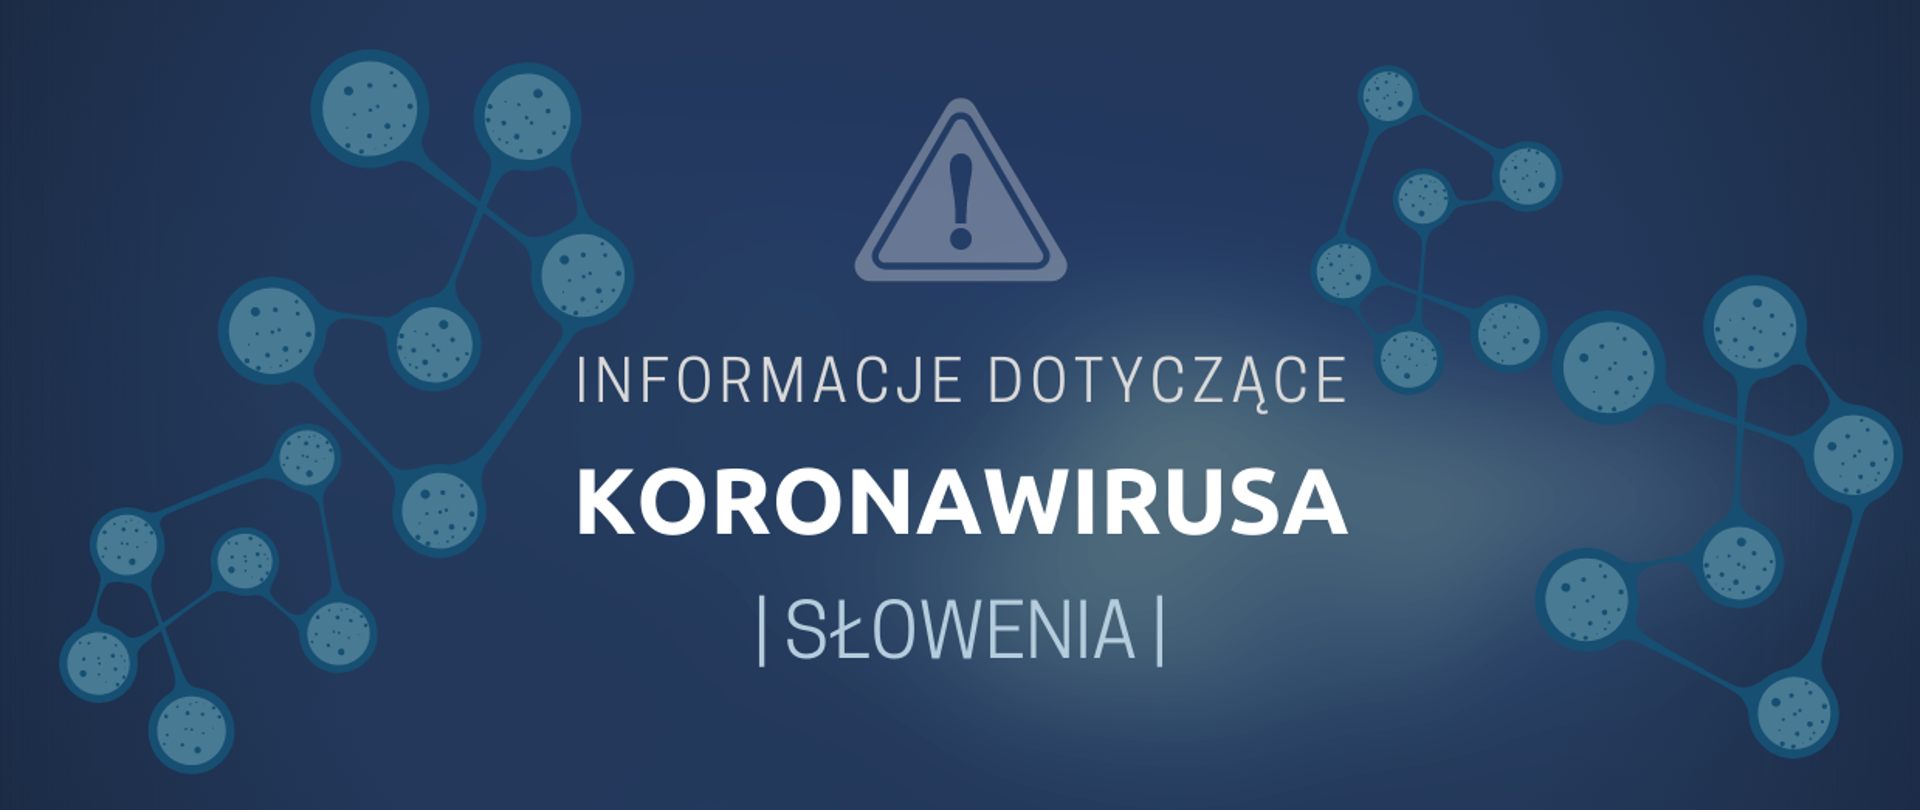 Informacja_nt_koronawirusa_Słowenia